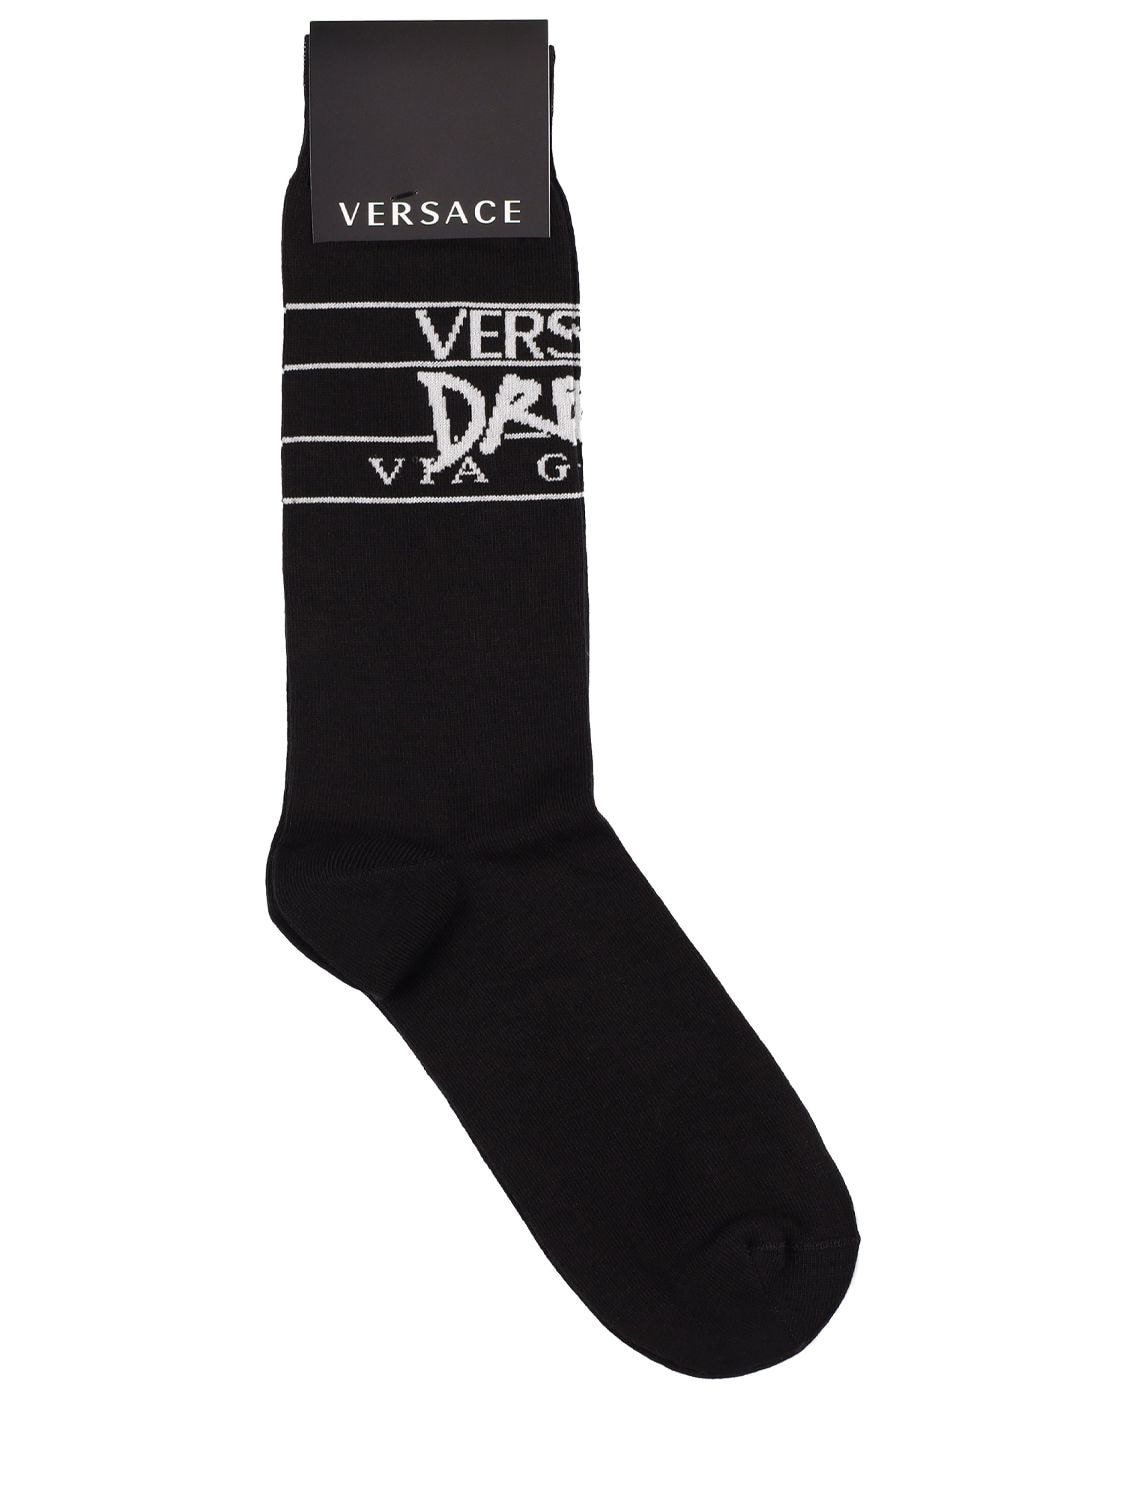 Versace - Versace dream cotton blend socks - Black/White | Luisaviaroma